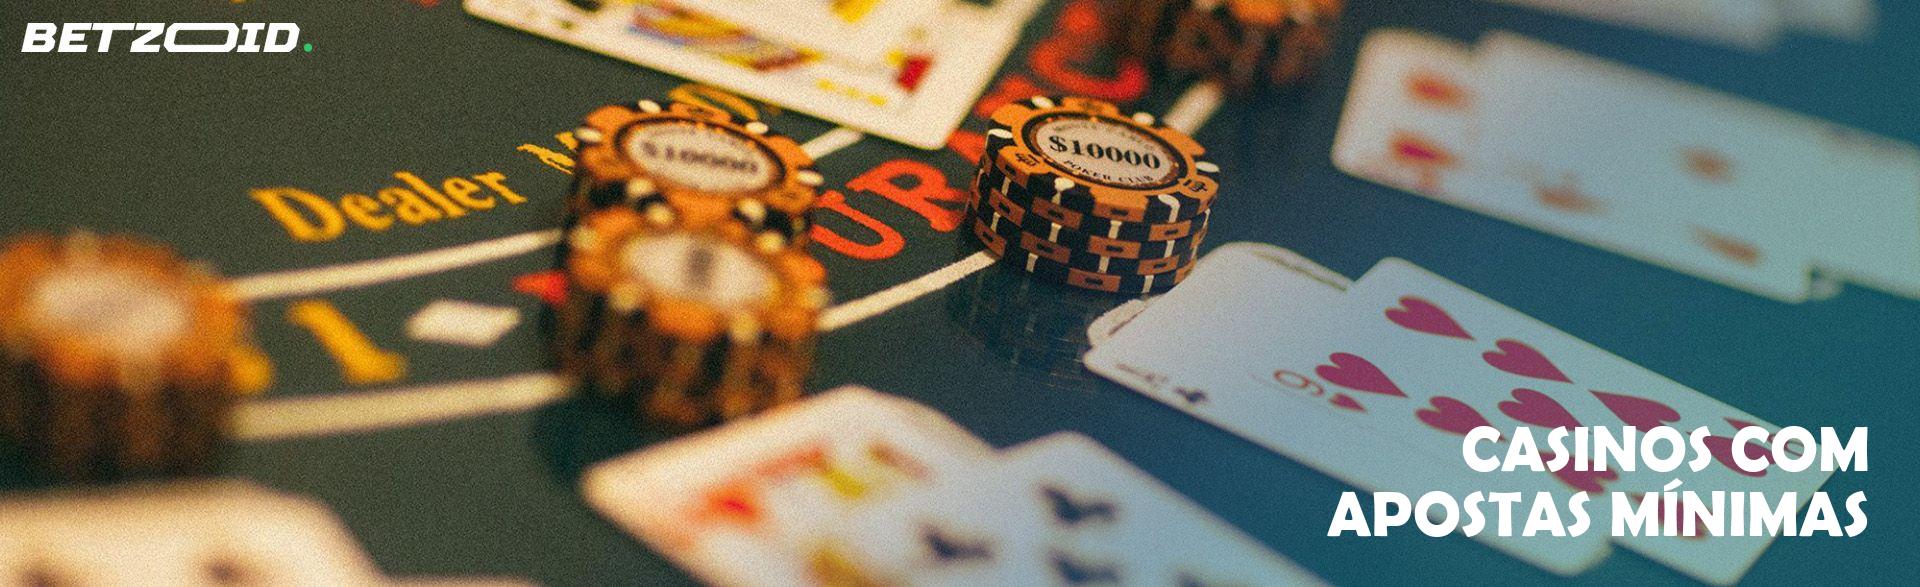 Casinos com Apostas Mínimas.